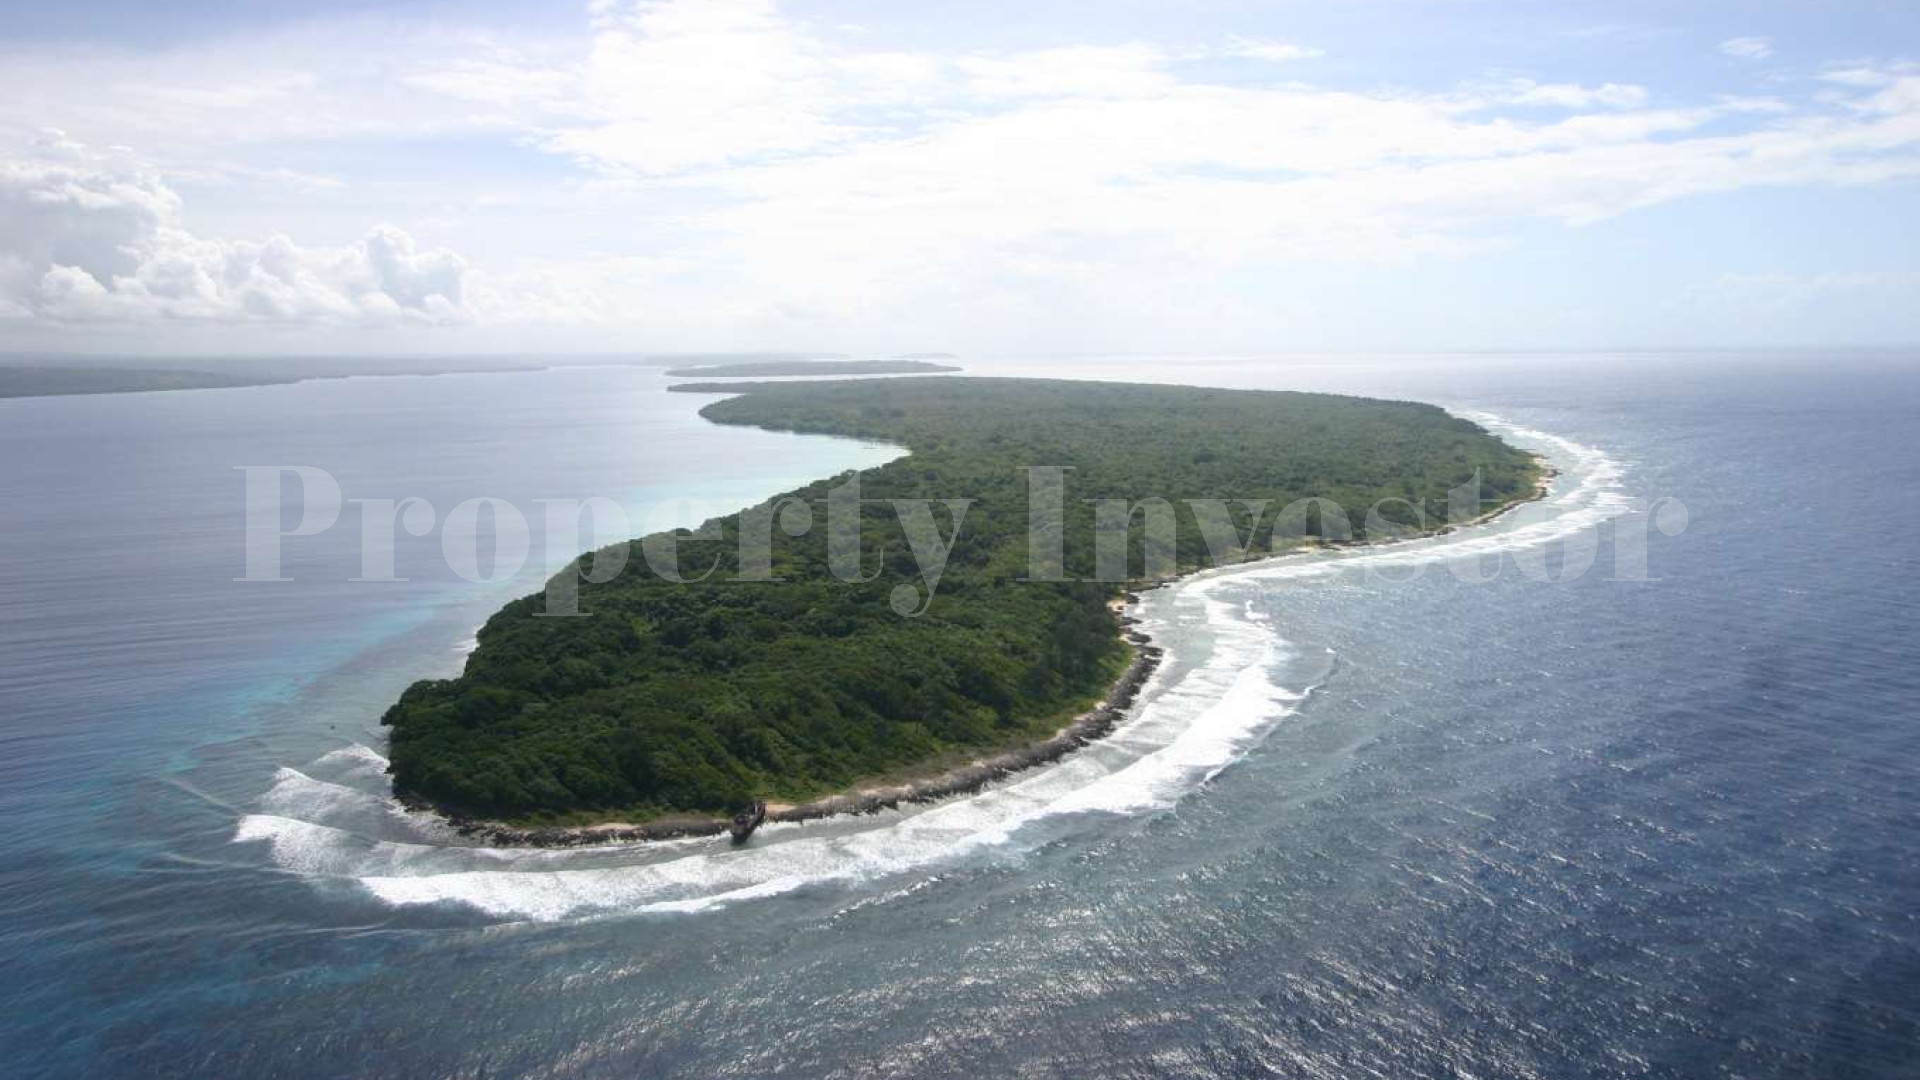 Massive Untouched 684 Hectare Private Island for Sale in Vanuatu